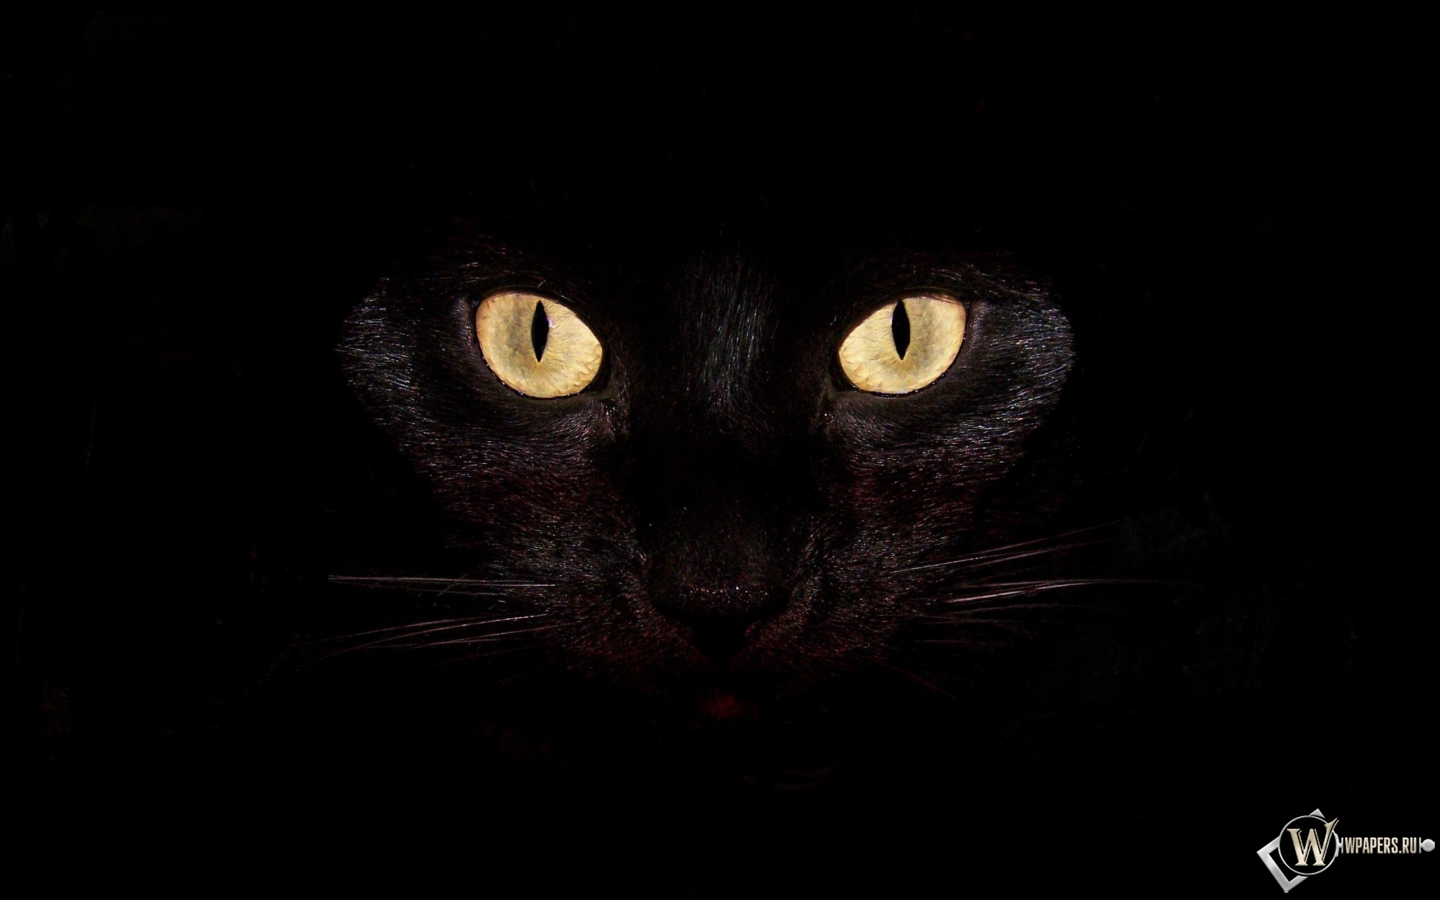 Черная кошка на чернофм фоне 1440x900